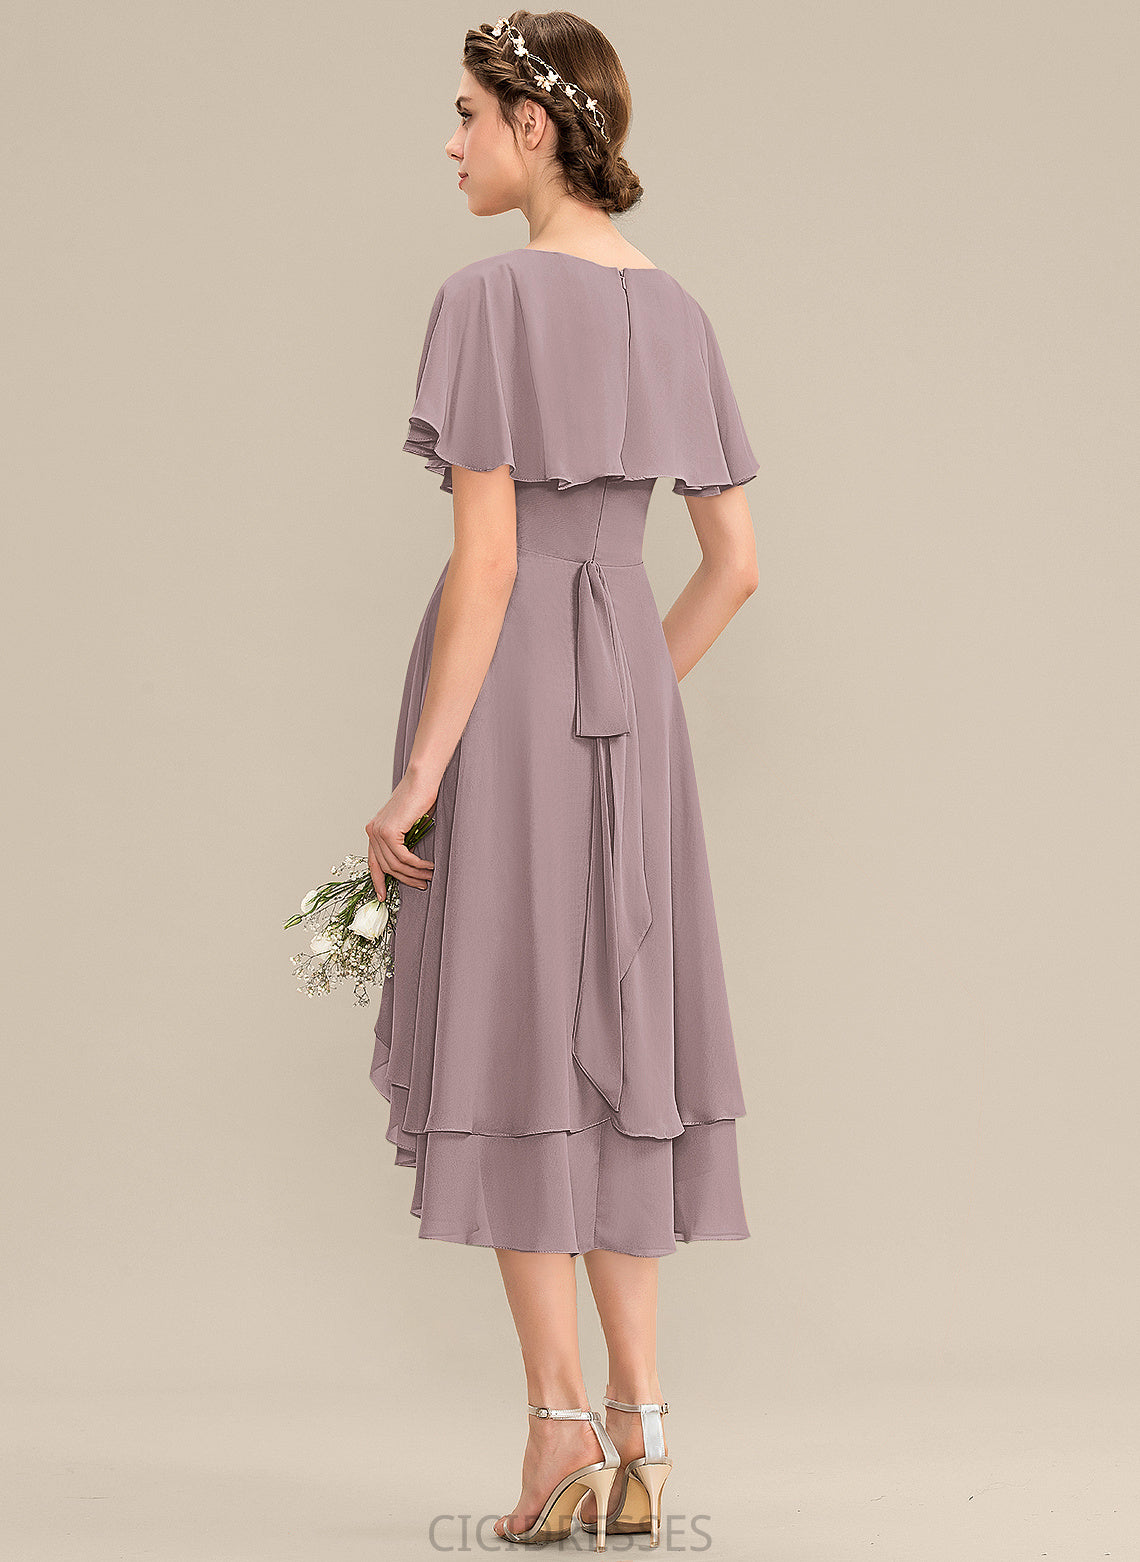 Asymmetrical Embellishment Silhouette CascadingRuffles Neckline Length Fabric A-Line V-neck Hope Sleeveless V-Neck Bridesmaid Dresses